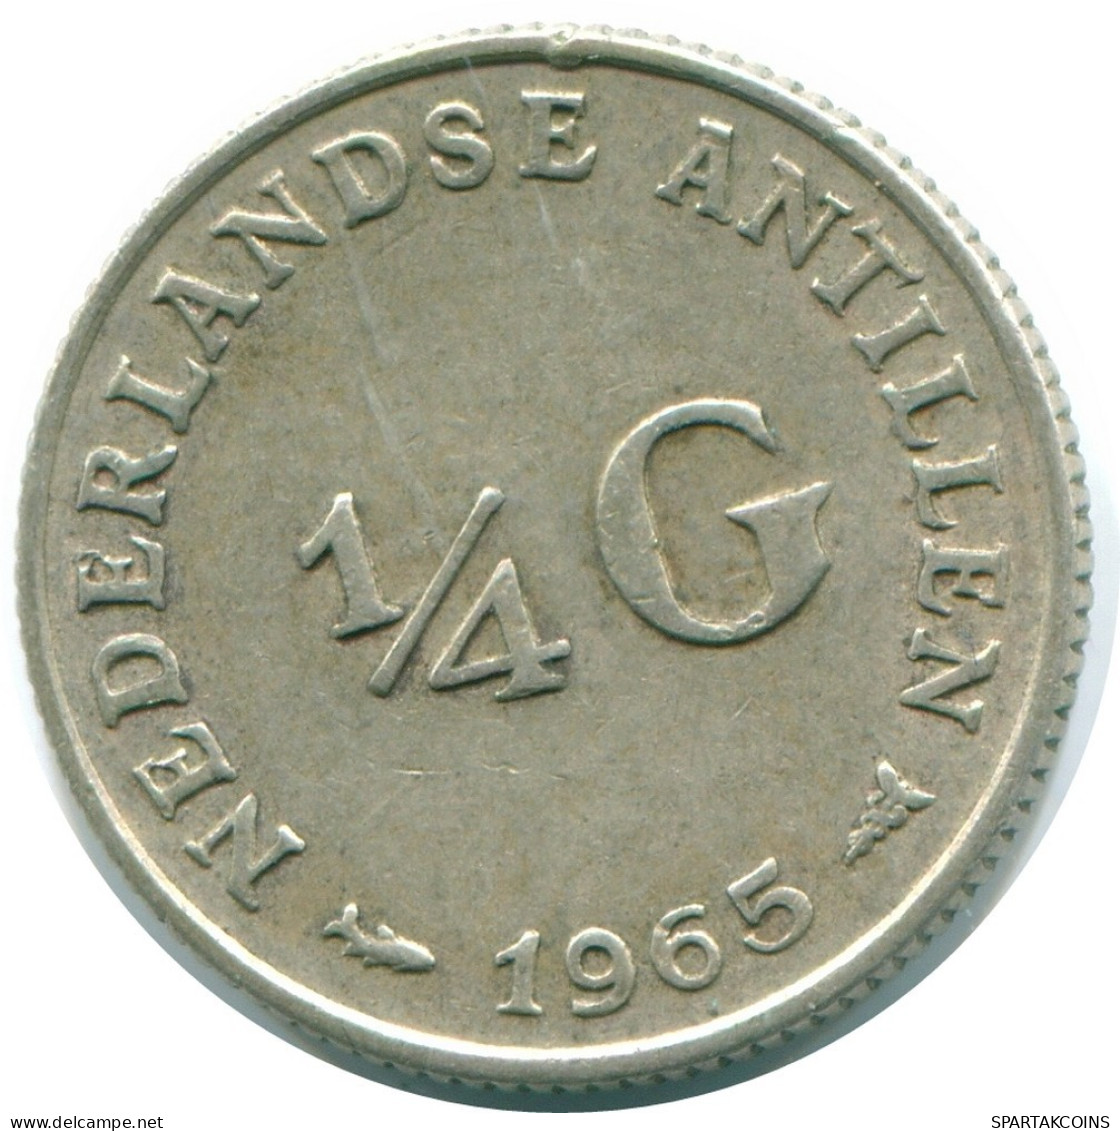 1/4 GULDEN 1965 NIEDERLÄNDISCHE ANTILLEN SILBER Koloniale Münze #NL11281.4.D.A - Antillas Neerlandesas